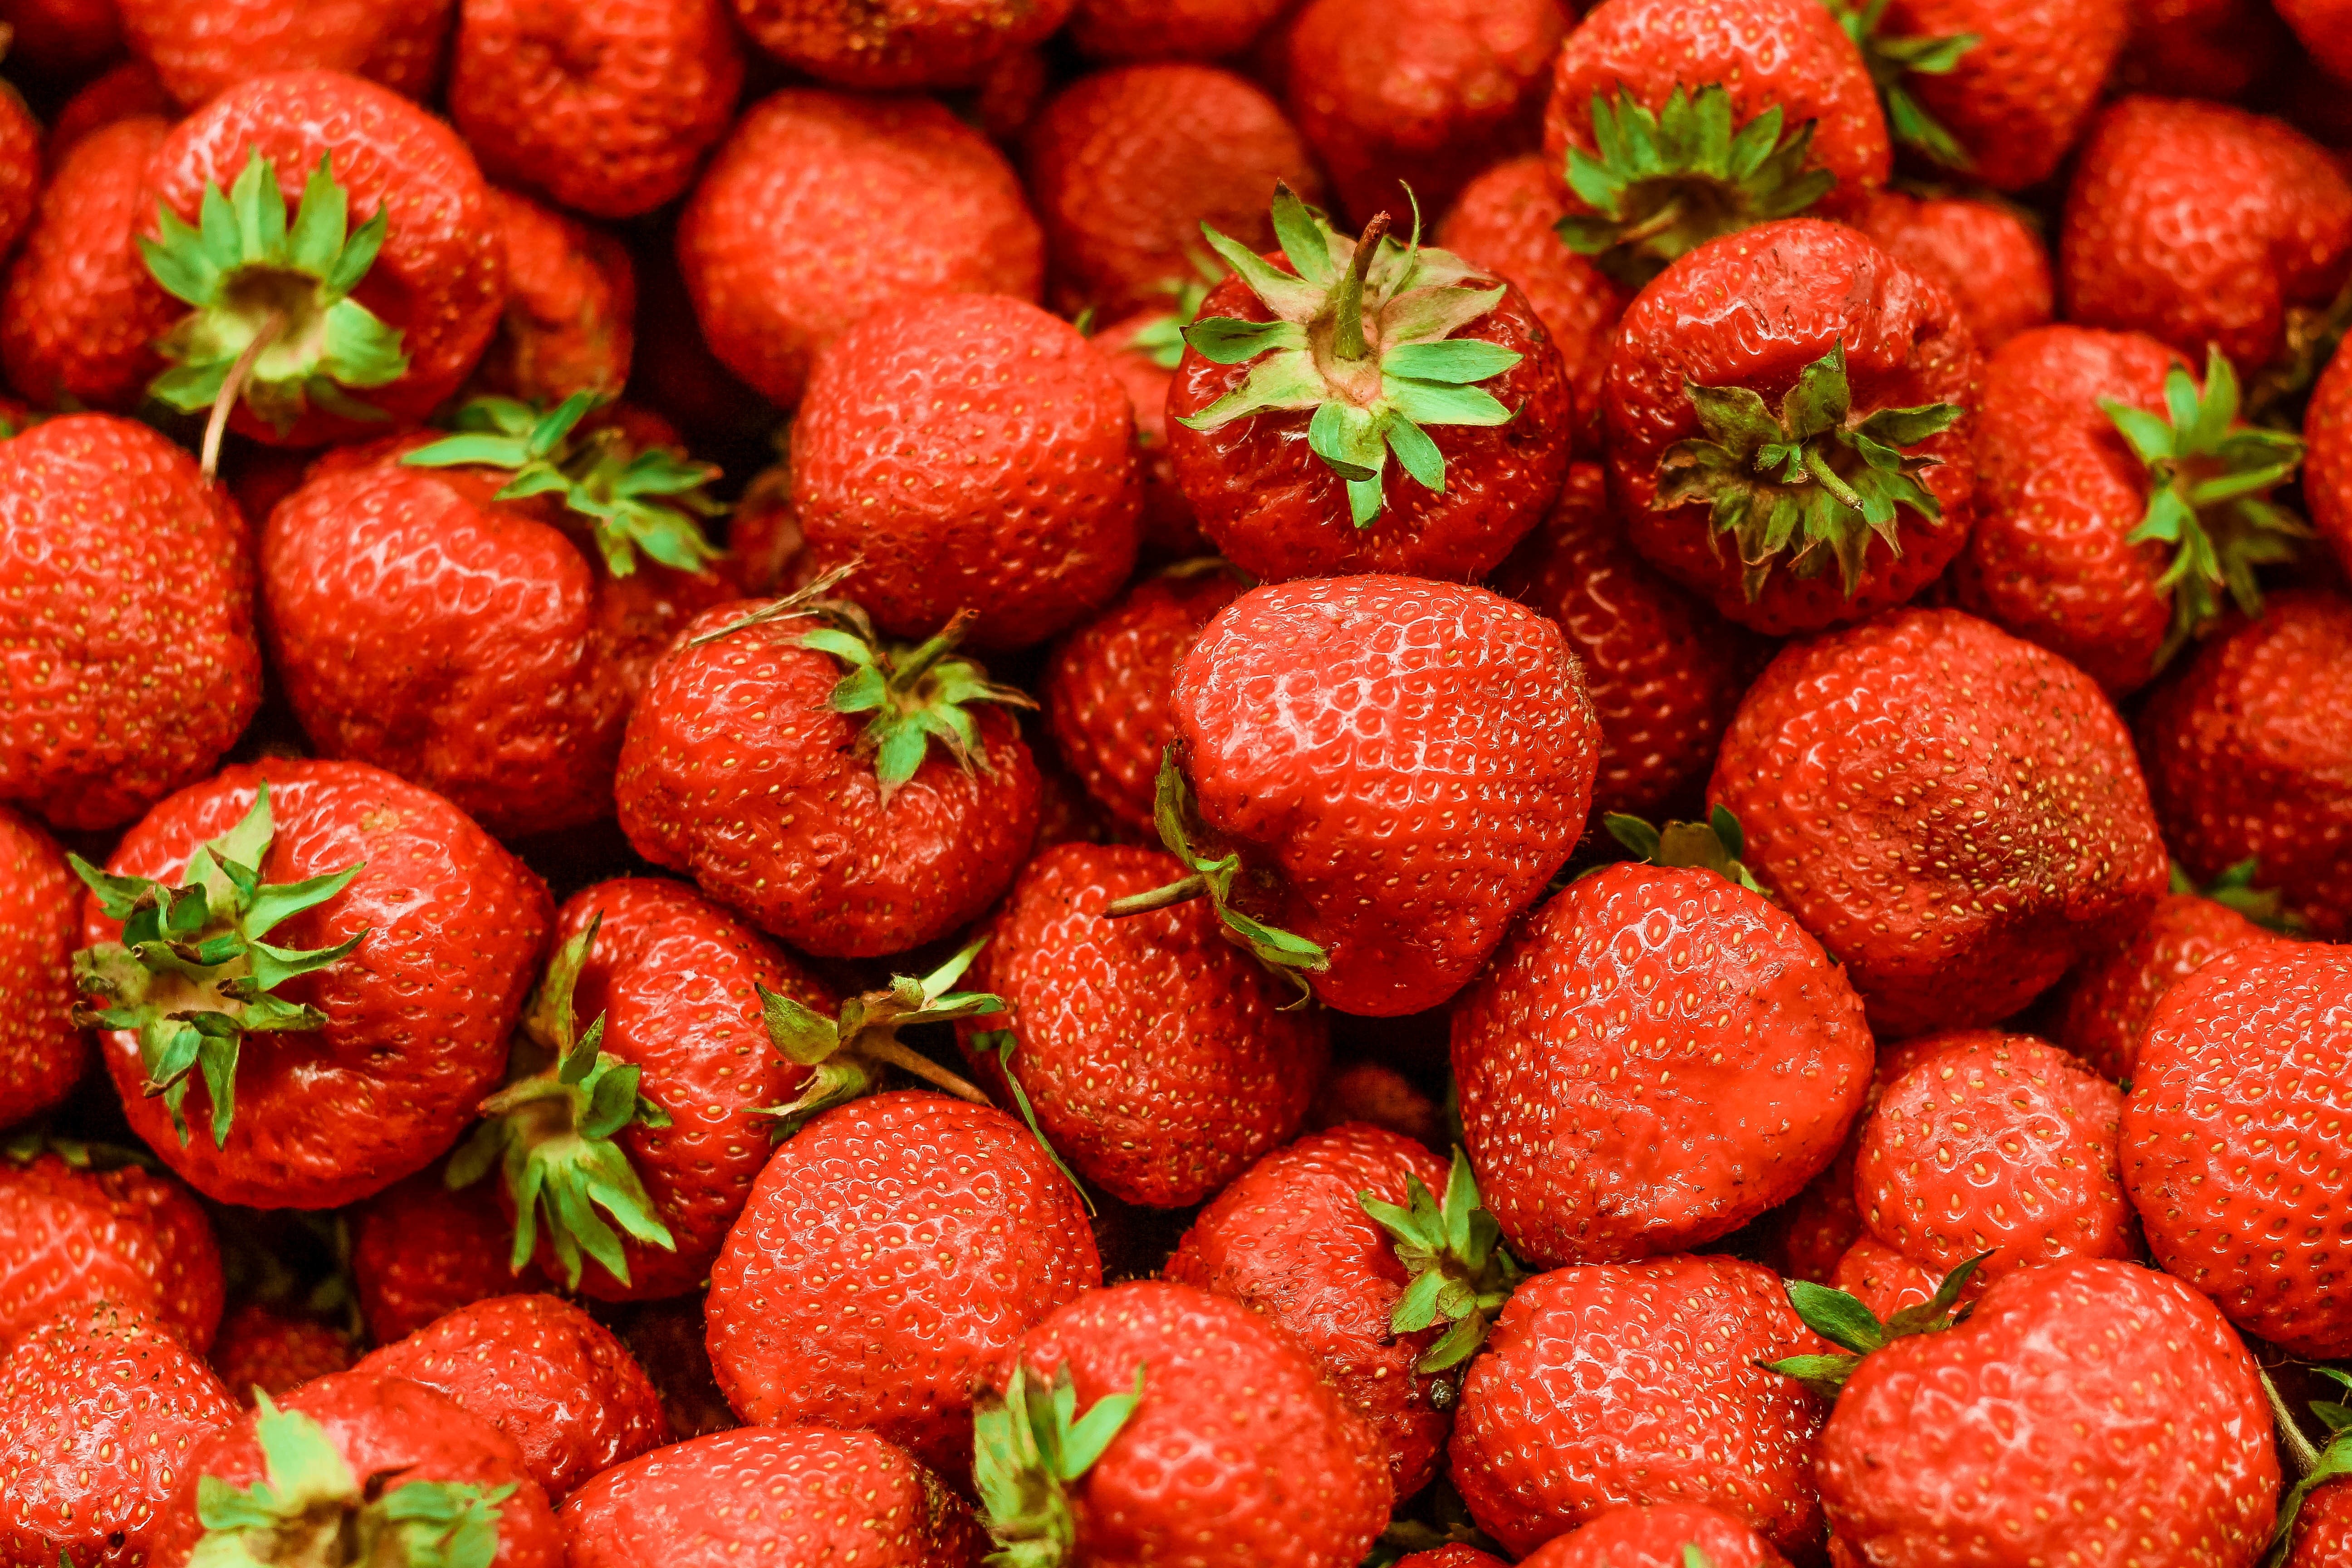 General 5184x3456 nature fruit food berries closeup macro strawberries